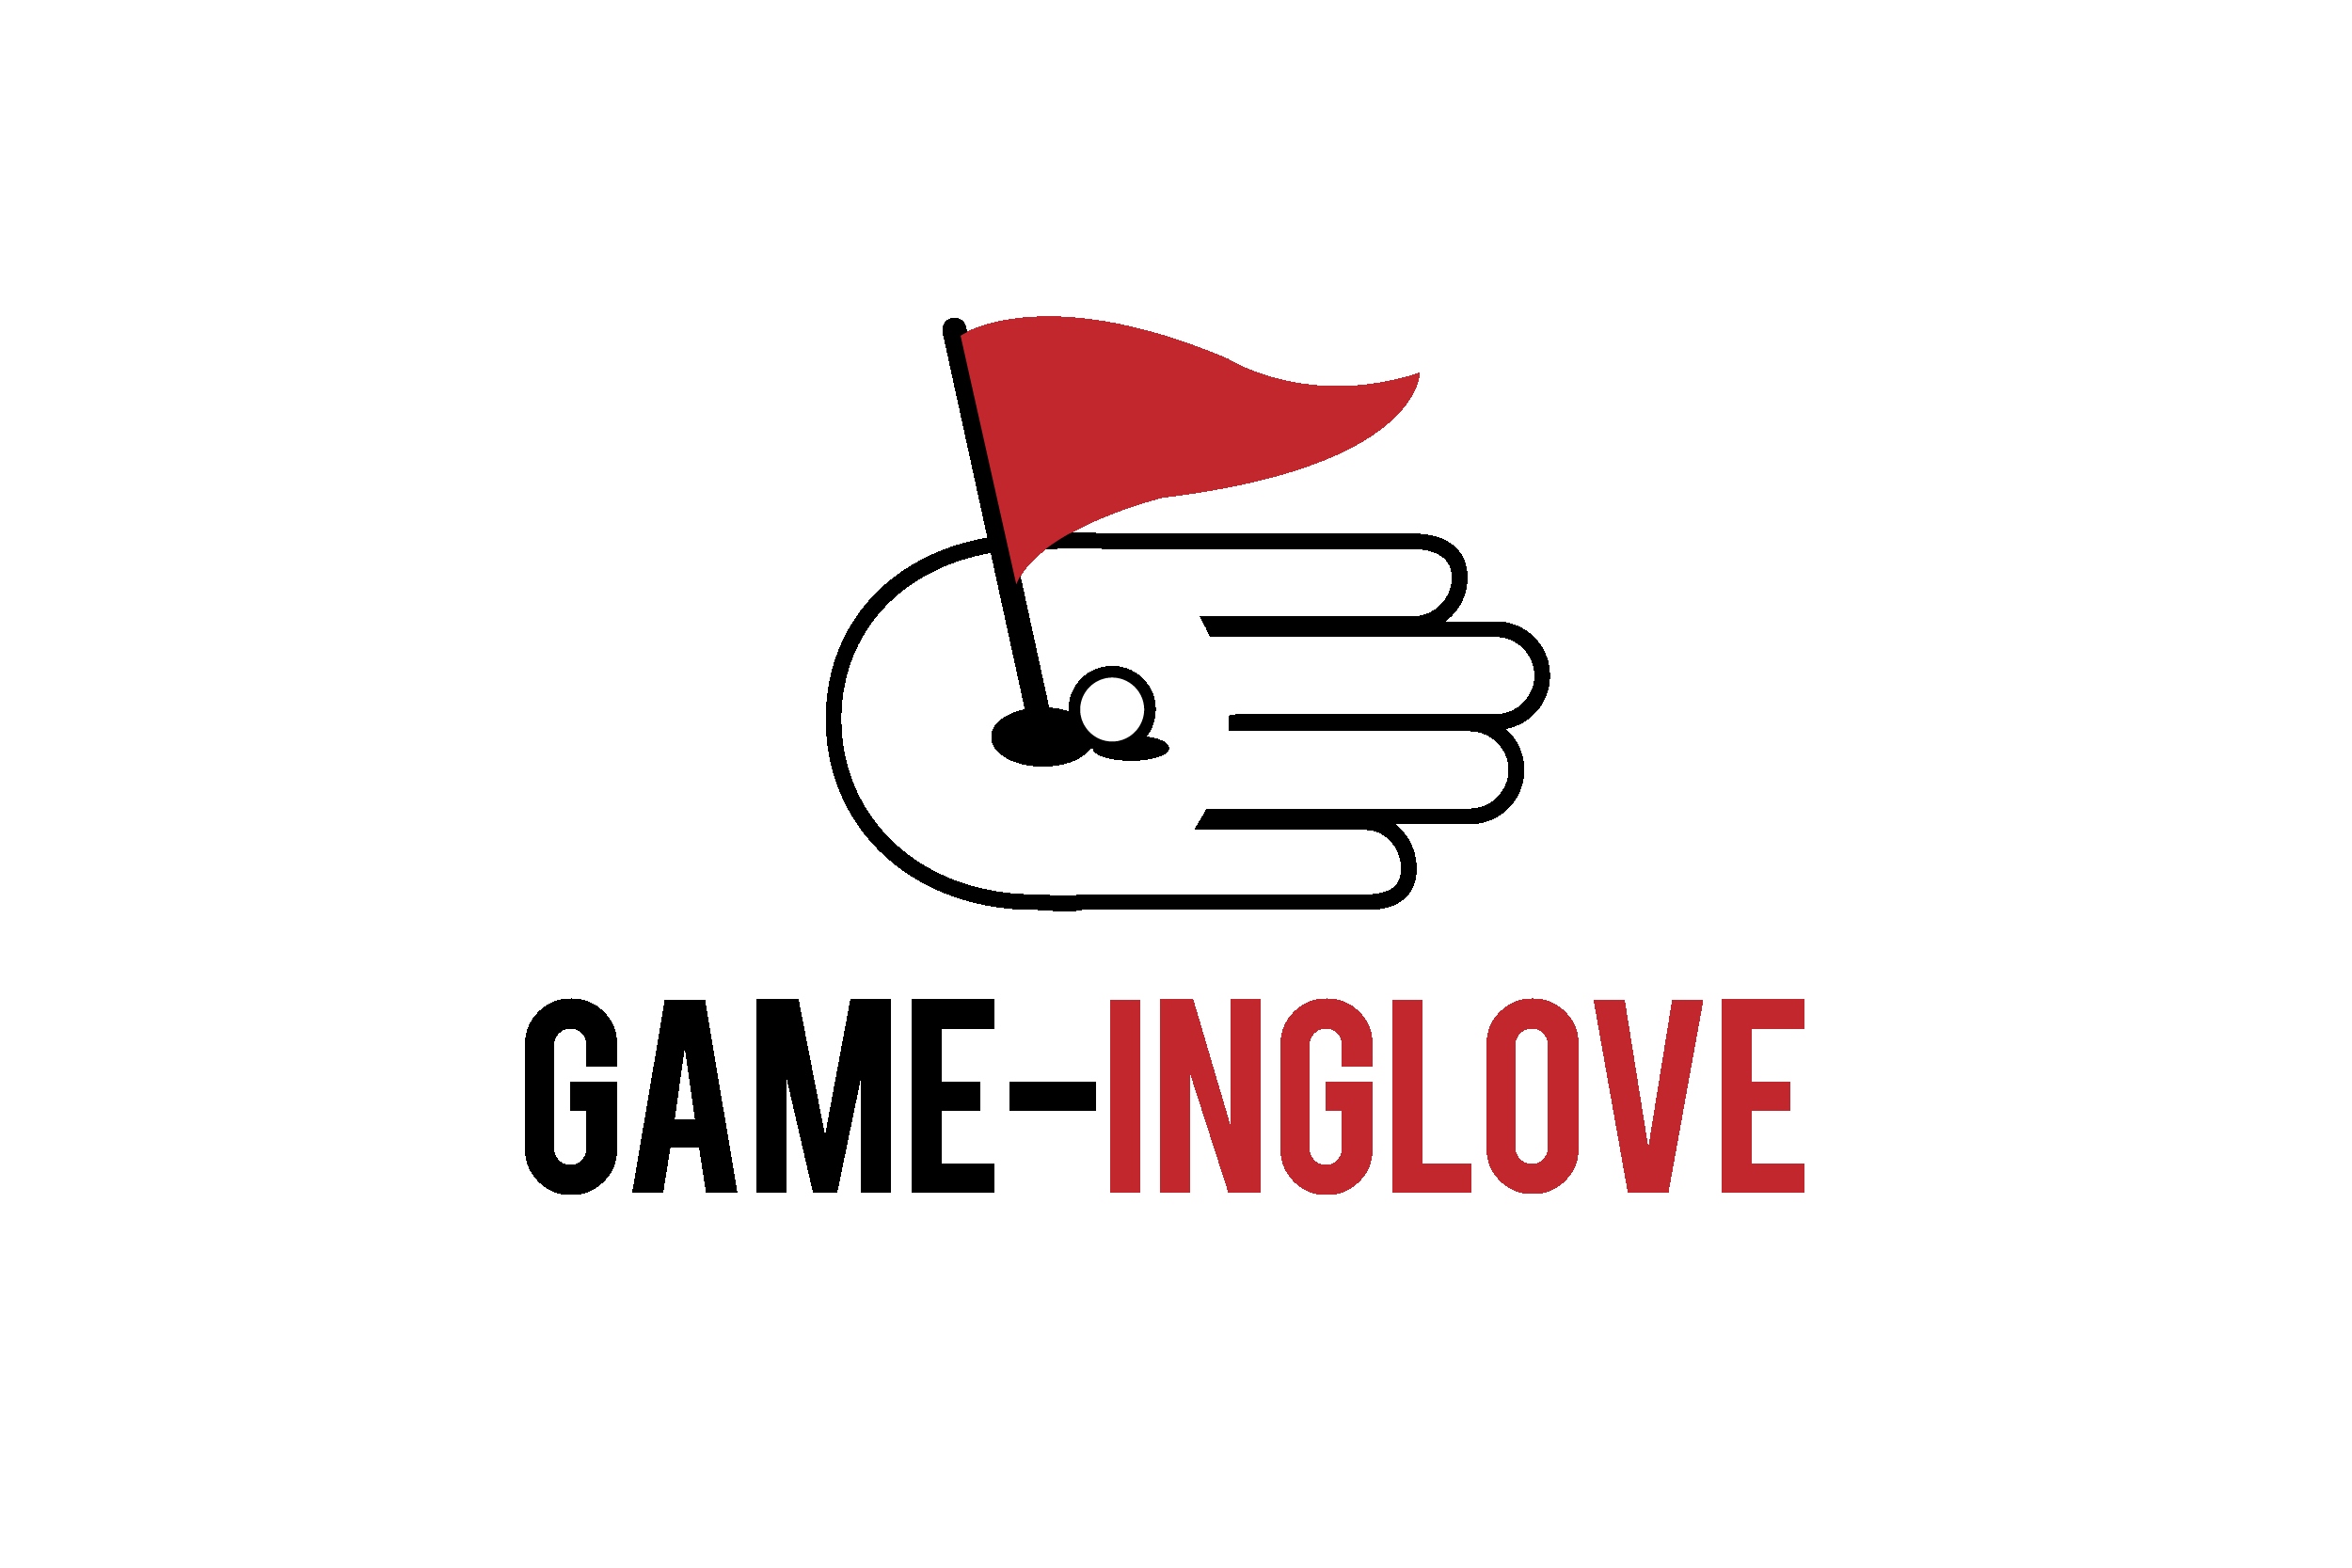 Game-inglove